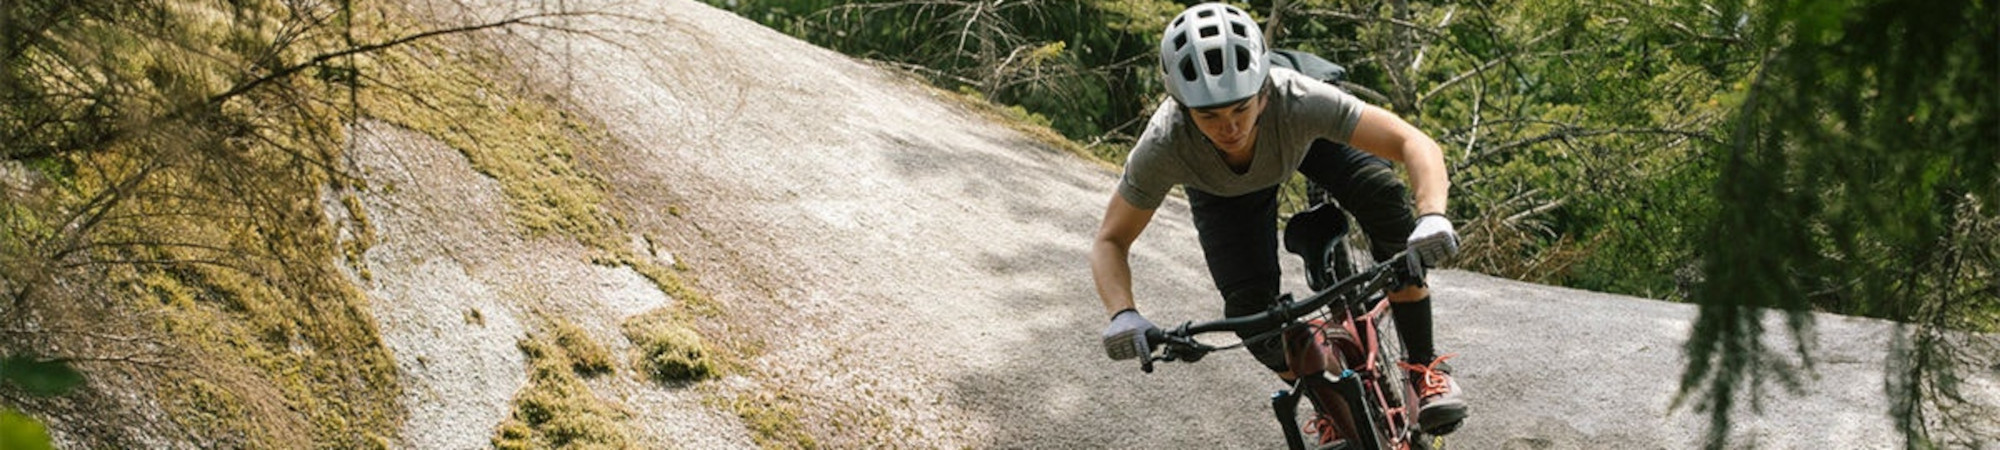 提升您的登山車騎乘技巧